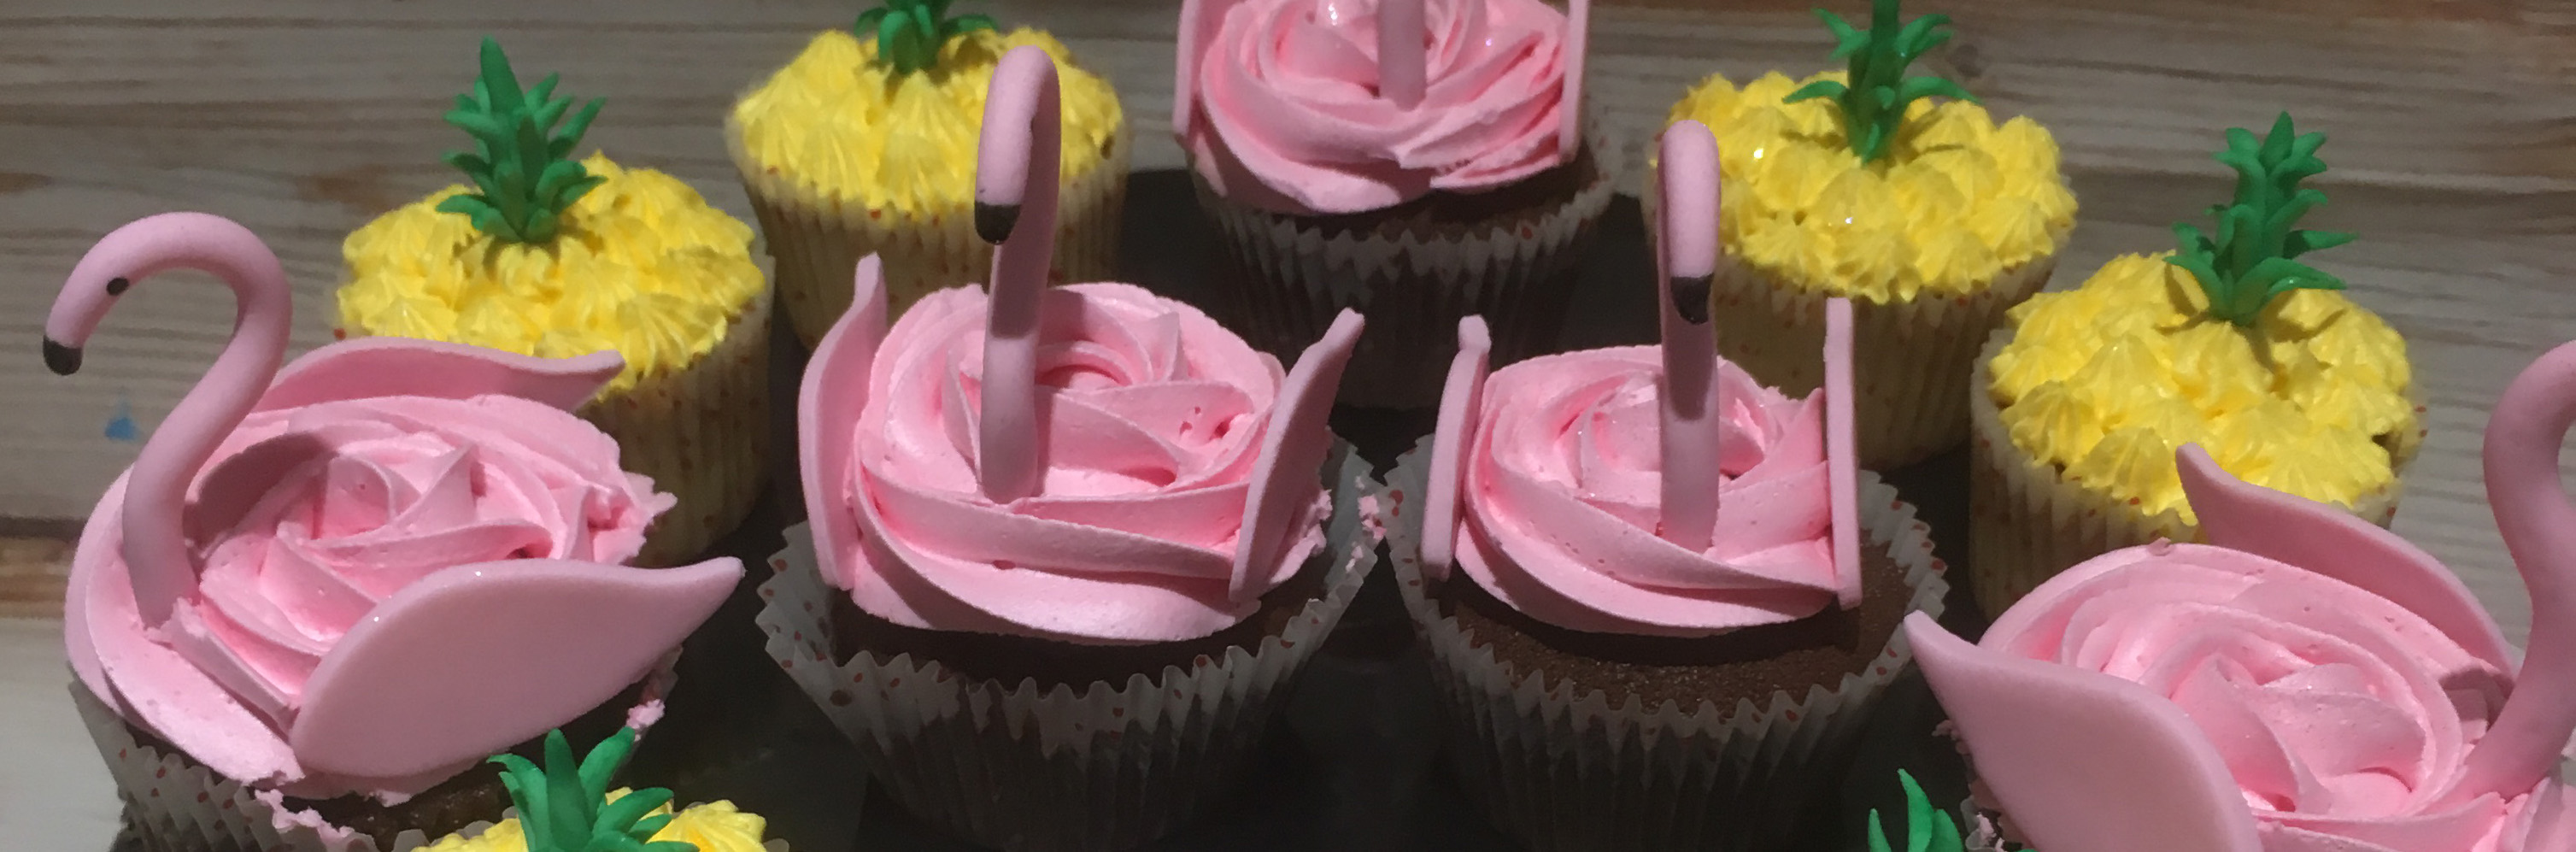 Cupcake flamands rose 2 bis bis.jpg